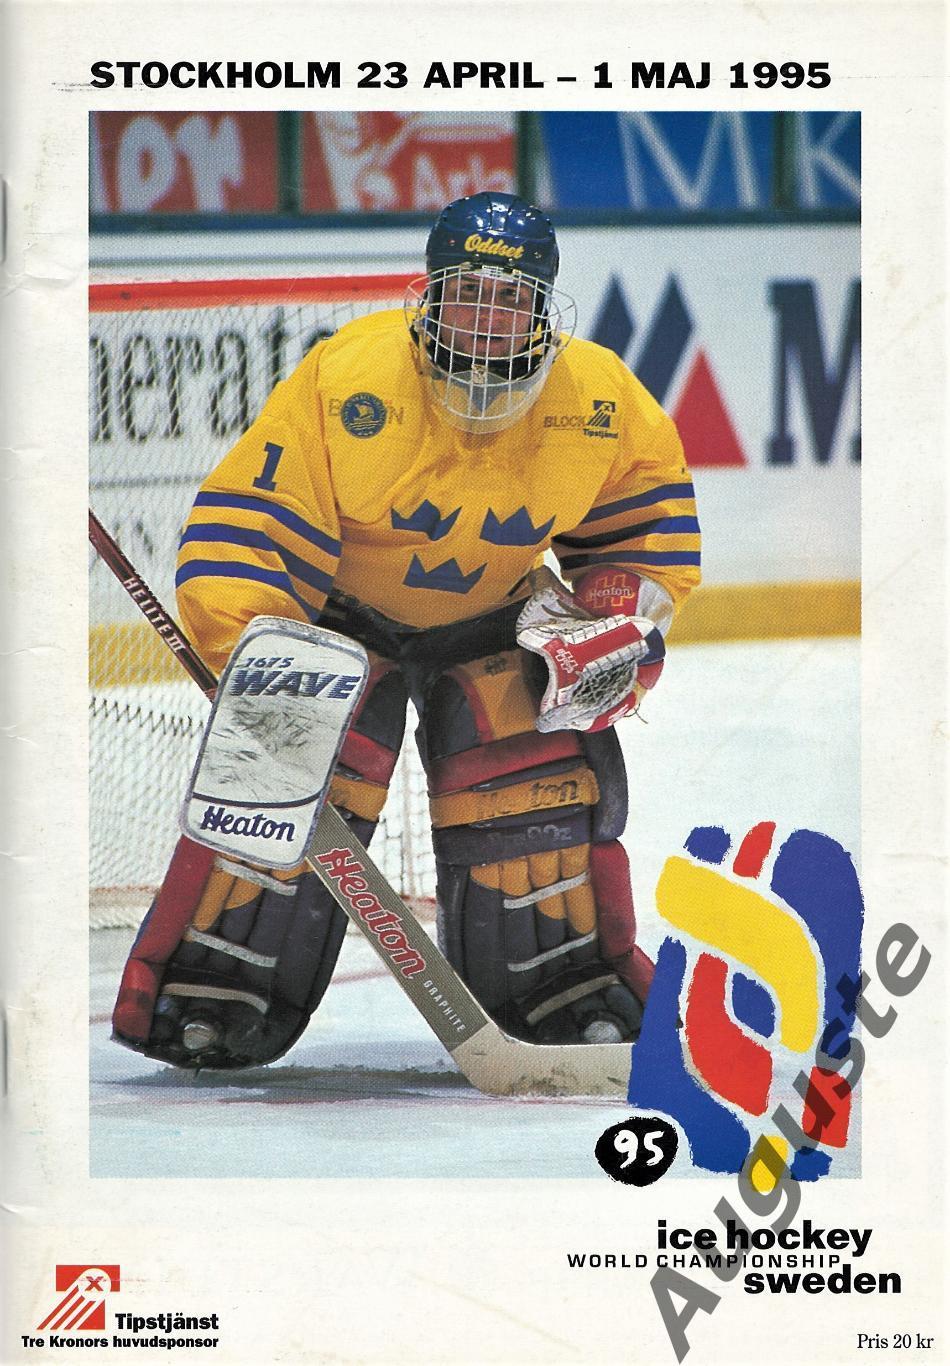 Чемпионат мира по хоккею в Швеции. Стокгольм. 23 апреля - 1 мая 1995 г.